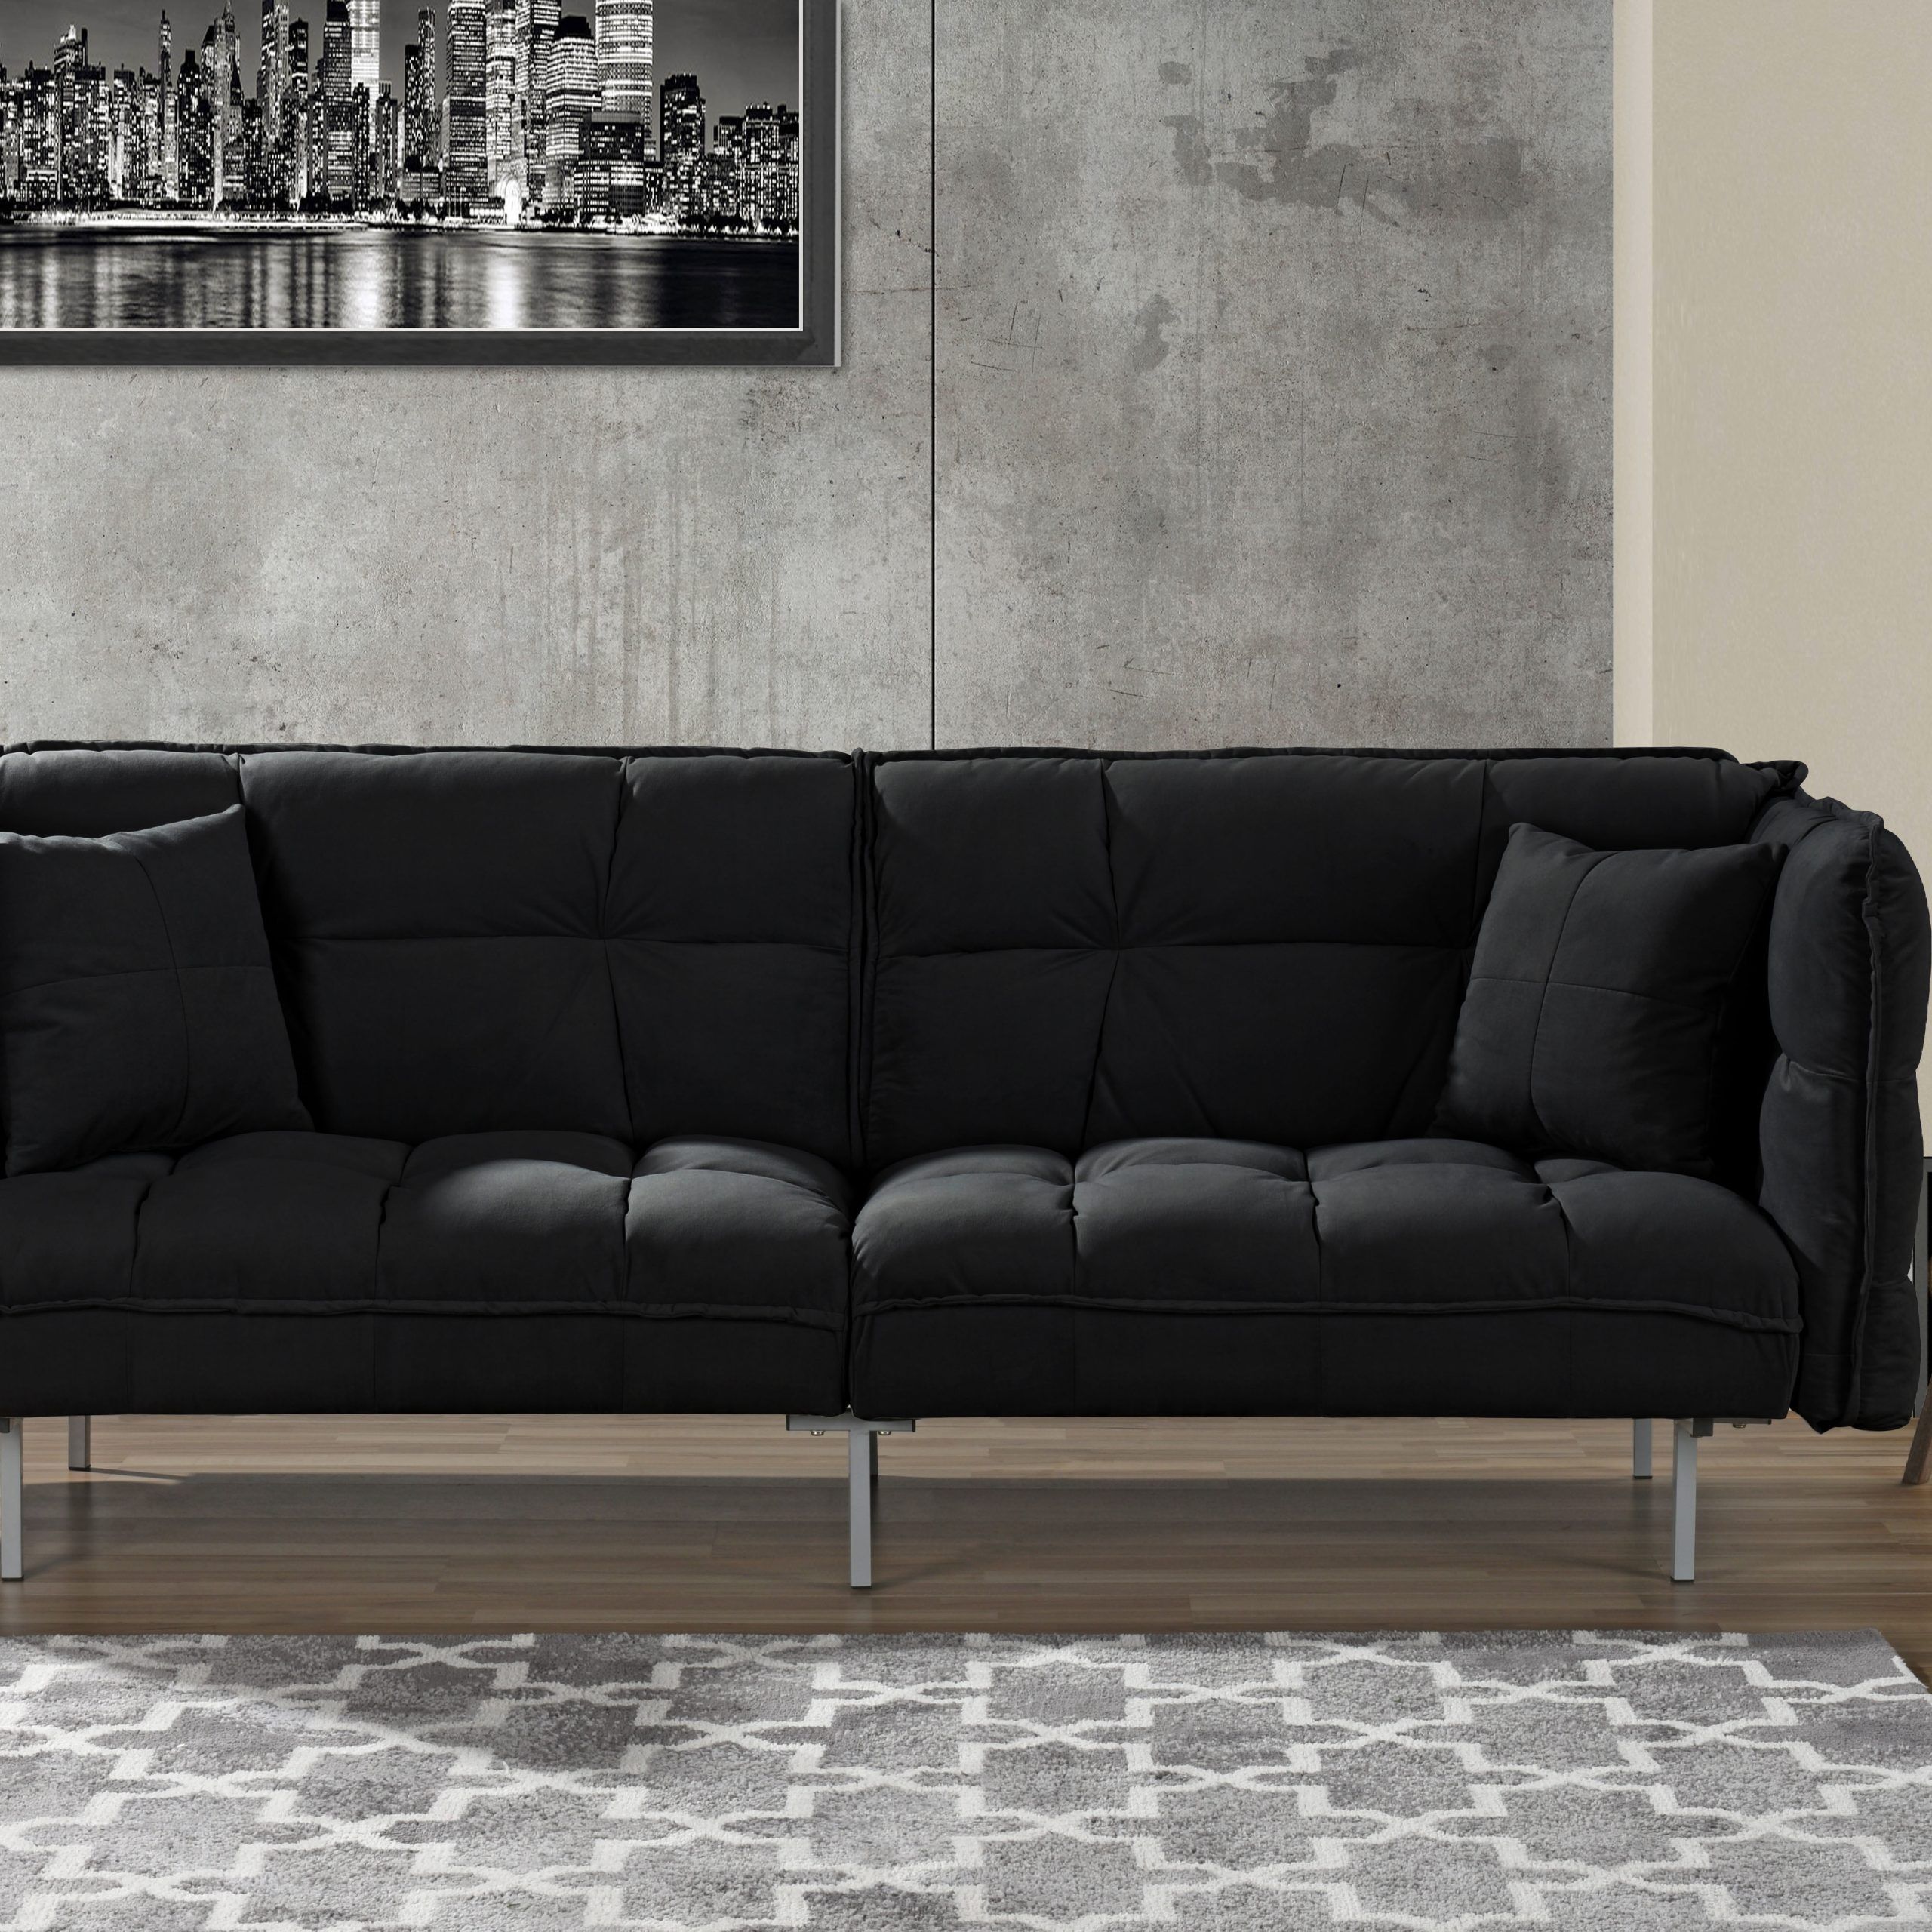 2 Seater Black Velvet Sofa Beds Regarding 2018 Plush Tufted Velvet Sleeper Sofa, Black – Walmart (View 10 of 15)